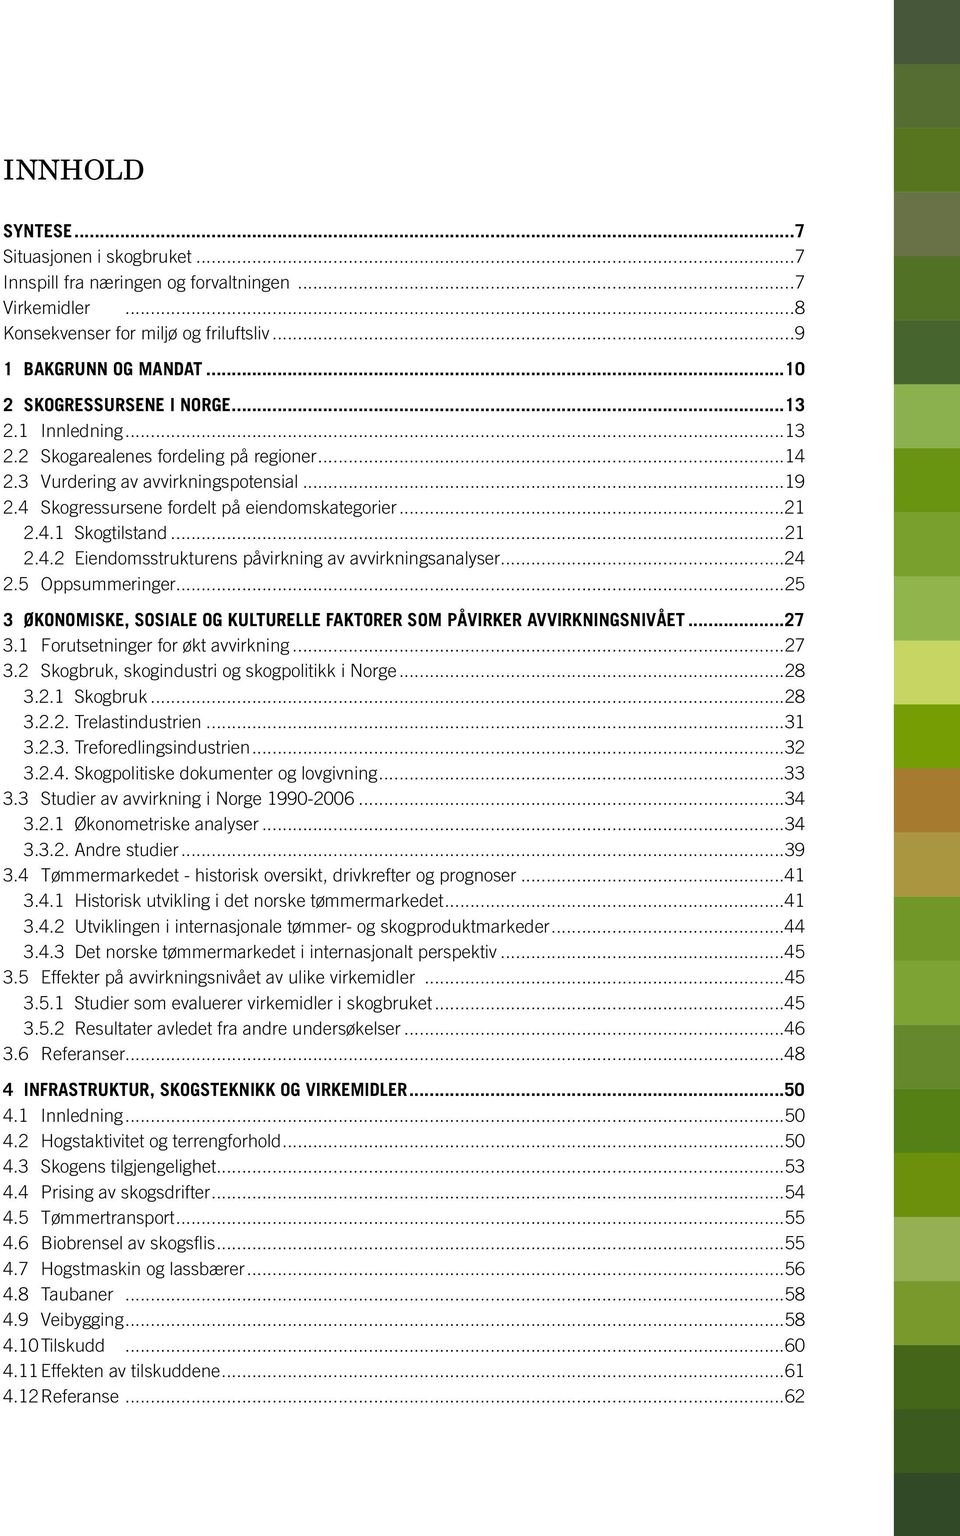 ..24 2.5 Oppsummeringer...25 3 ØKONOMISKE, SOSIALE OG KULTURELLE FAKTORER SOM PÅVIRKER AVVIRKNINGSNIVÅET...27 3.1 Forutsetninger for økt avvirkning...27 3.2 Skogbruk, skogindustri og skogpolitikk i Norge.